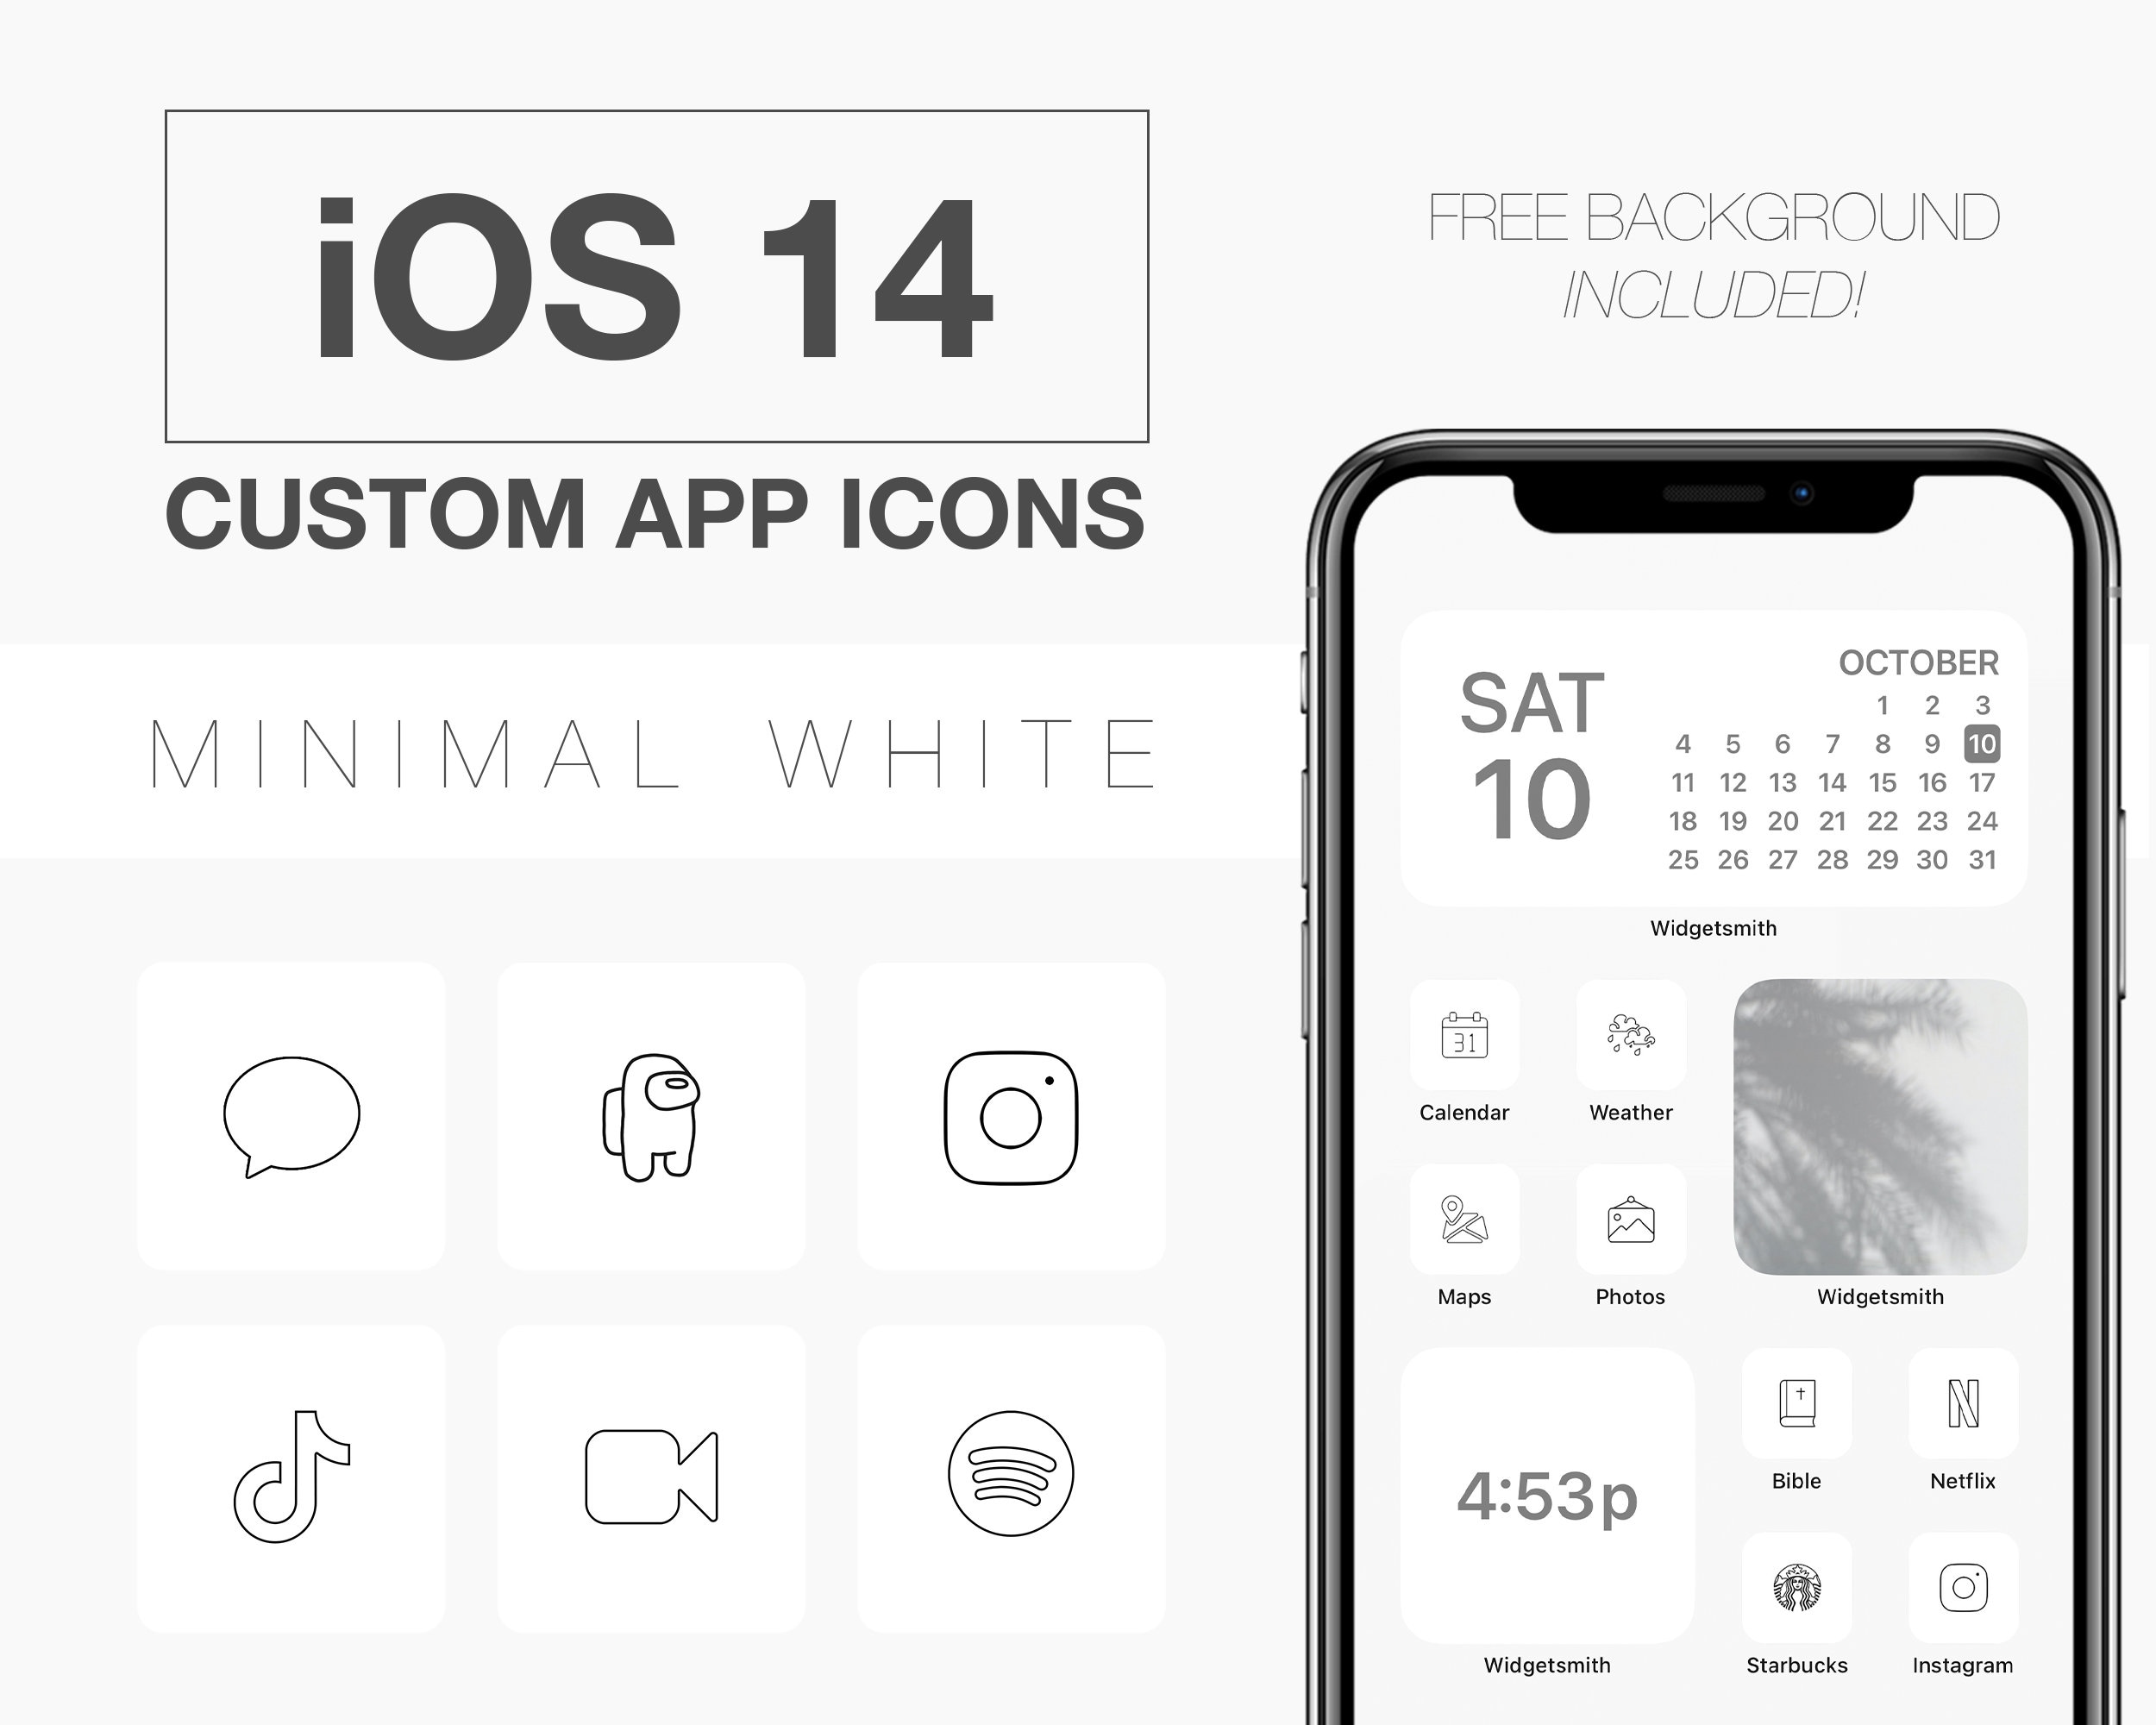 Khám phá ứng dụng iOS 14 với thiết kế đồ họa tối giản và biểu tượng trắng tuyệt đẹp. Sử dụng ứng dụng để trải nghiệm giao diện mới, tối ưu hoá hiệu suất và tăng cường trải nghiệm người dùng. Hãy xem hình ảnh liên quan đến ứng dụng này và cảm nhận sự thay đổi đầy tích cực.